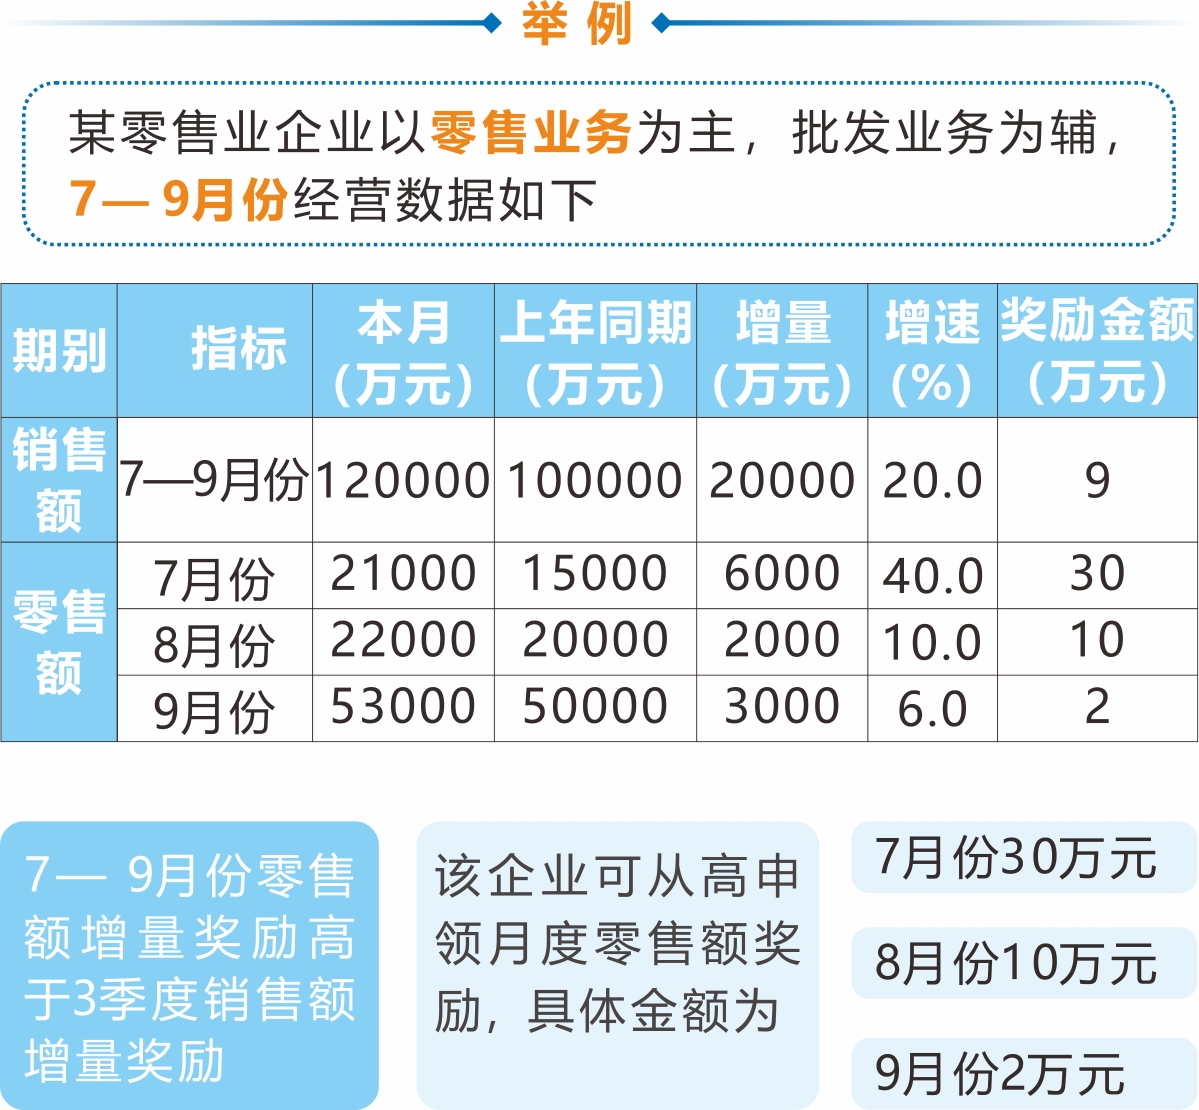 《杭州市商务局关于印发加大批零住餐业支持力度政策实施细则的通知》解读